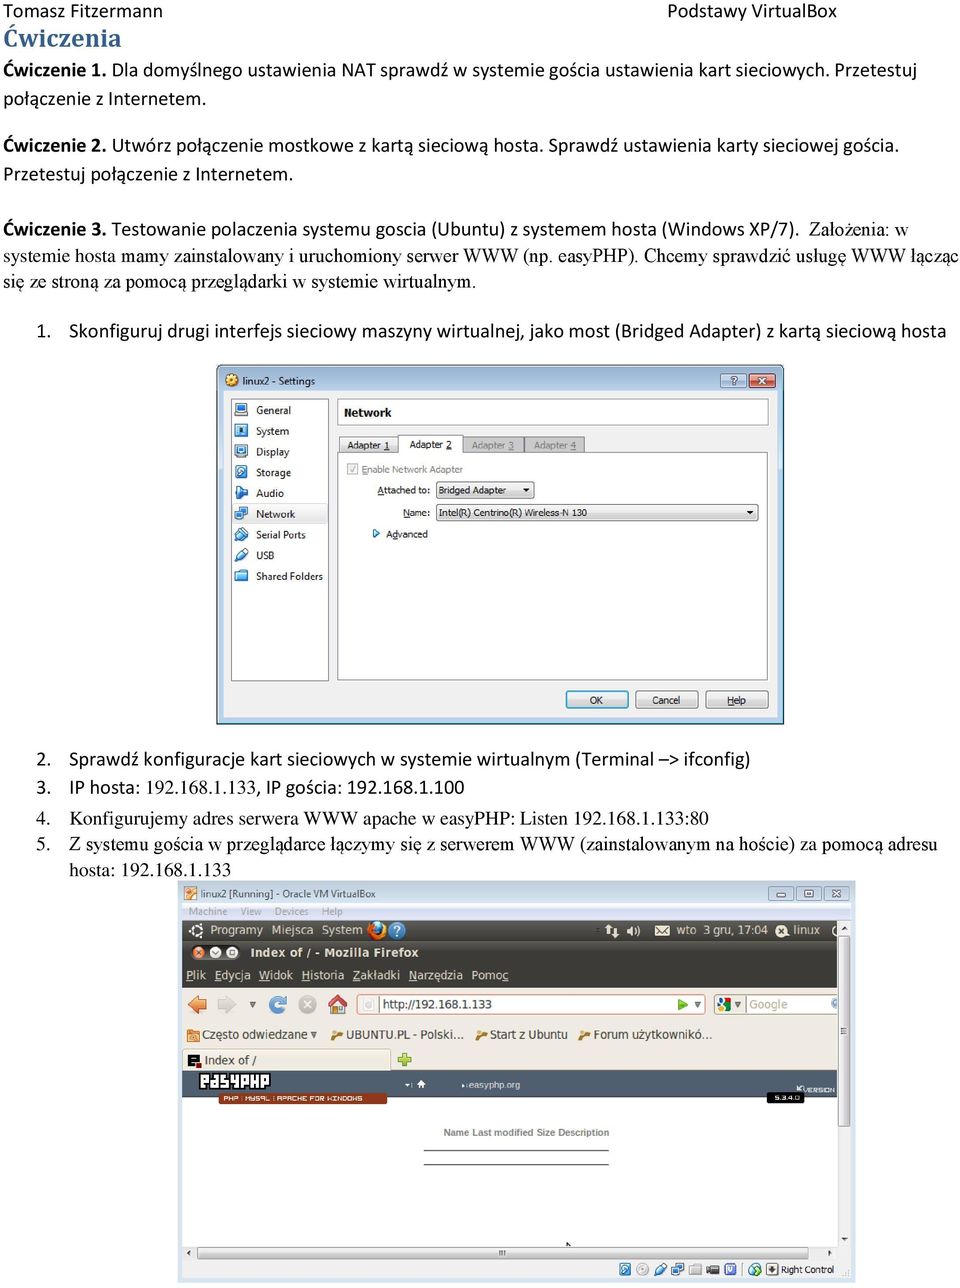 Testowanie polaczenia systemu goscia (Ubuntu) z systemem hosta (Windows XP/7). Założenia: w systemie hosta mamy zainstalowany i uruchomiony serwer WWW (np. easyphp).